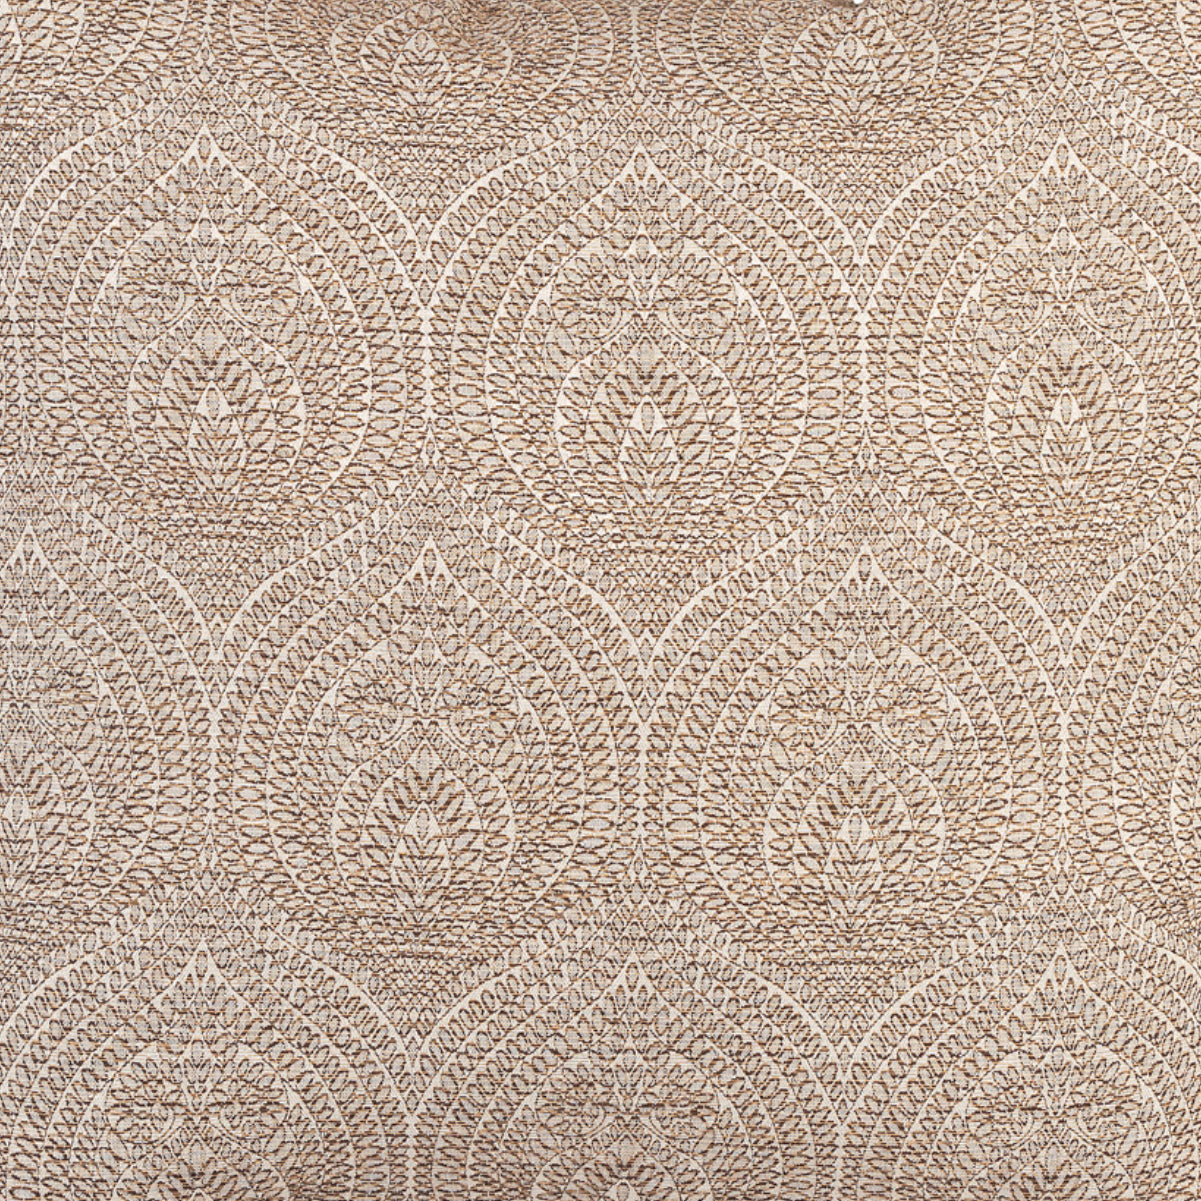 Cushion FJURI 50x50 Mandala's Pattern Brown